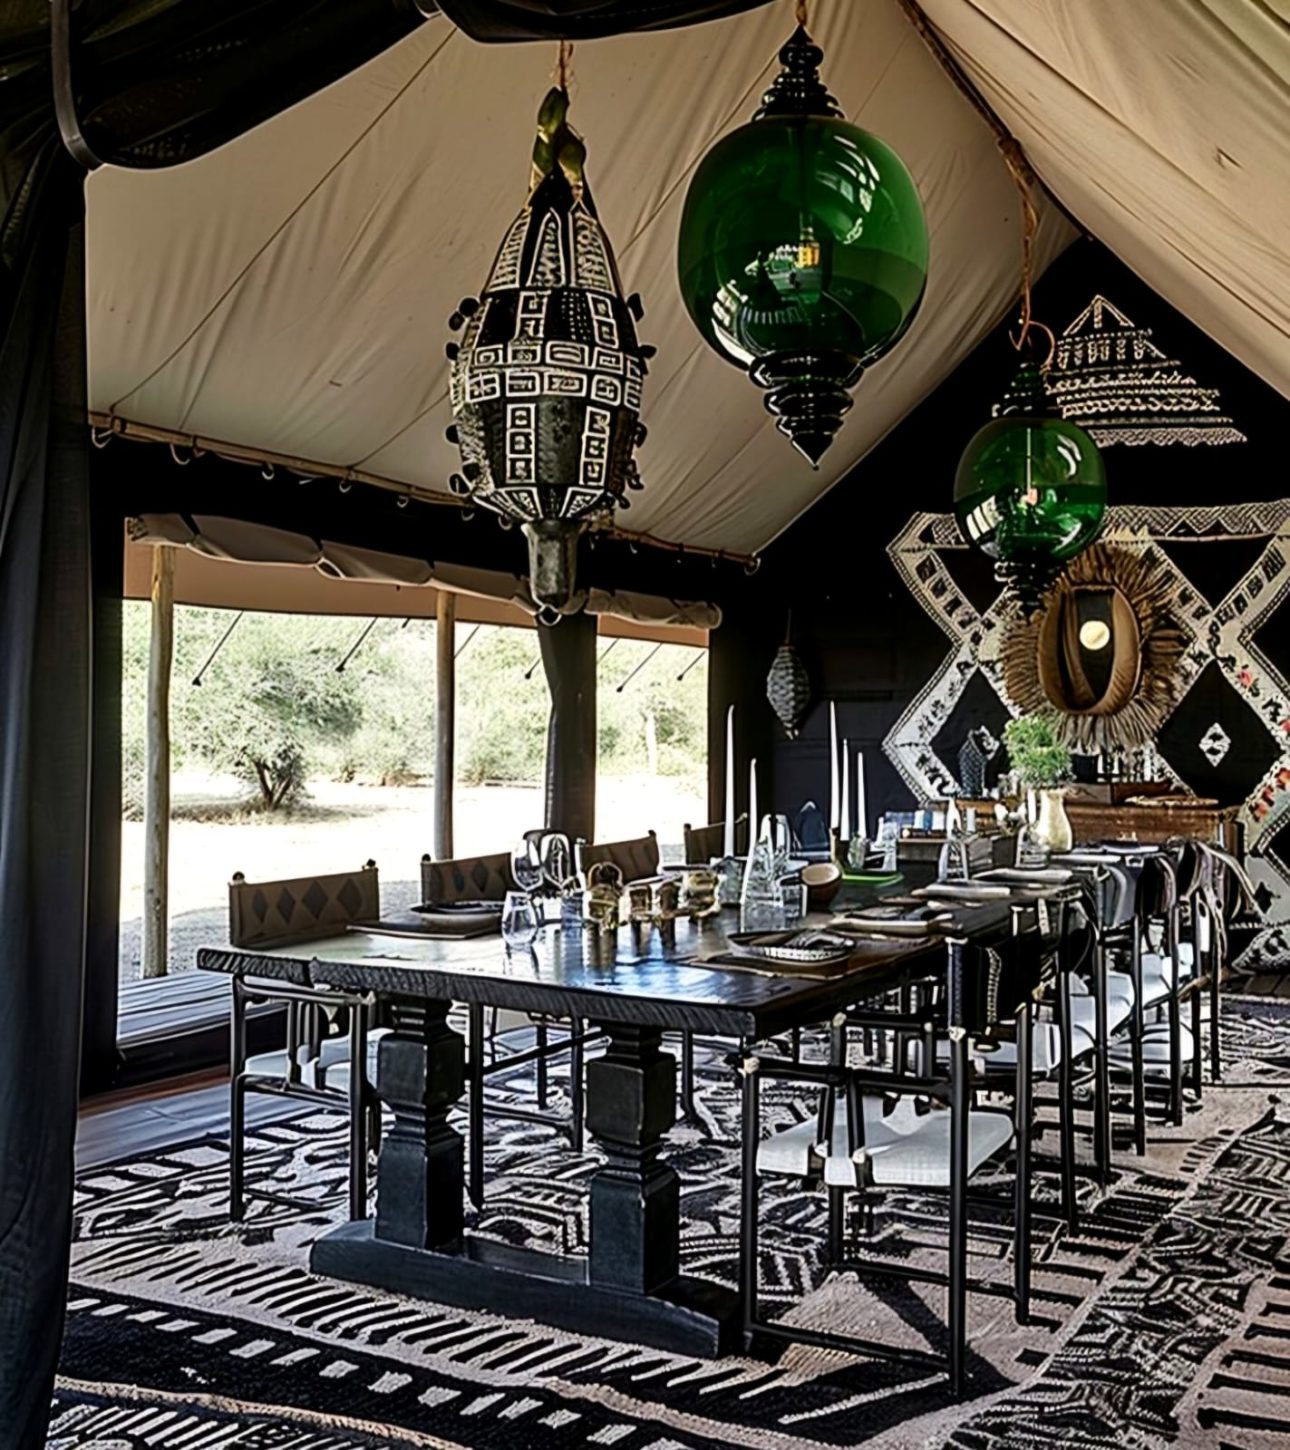 Ornamentalismo- mistura de elementos como nessa imagem. Uma tend, ambienta o espaço para uma mesa de jantar. Lustres verdes em vidro dialogam com a decoração em preto e branco 